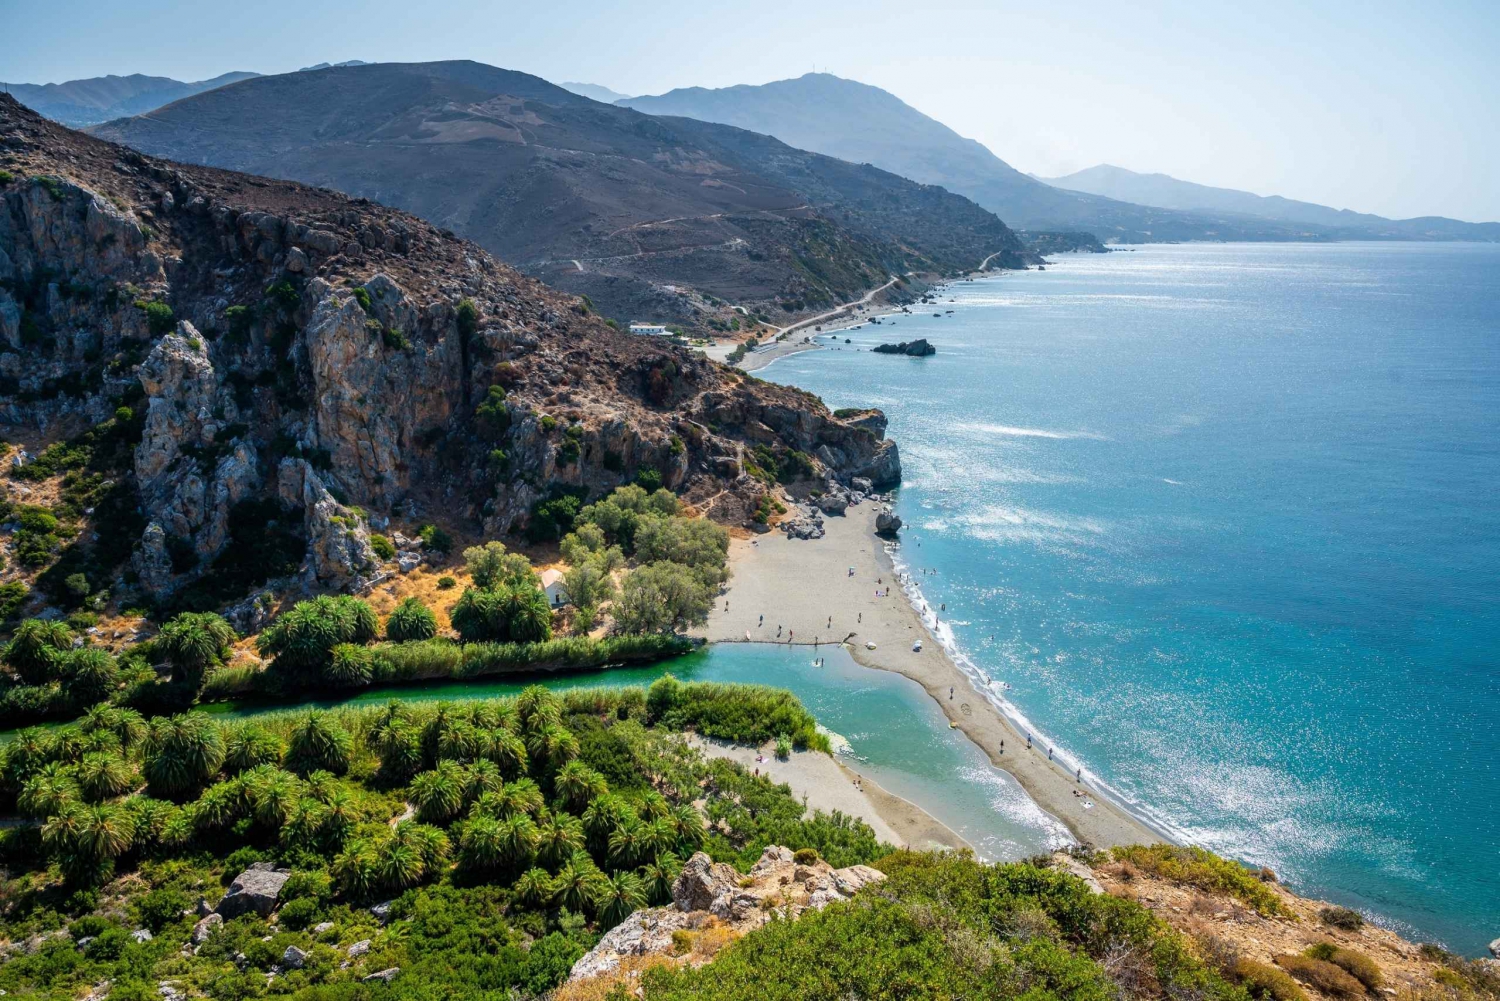 1-dniowa wycieczka do plaży Preveli i Damnoni oraz zwiedzanie miasta Rethymno